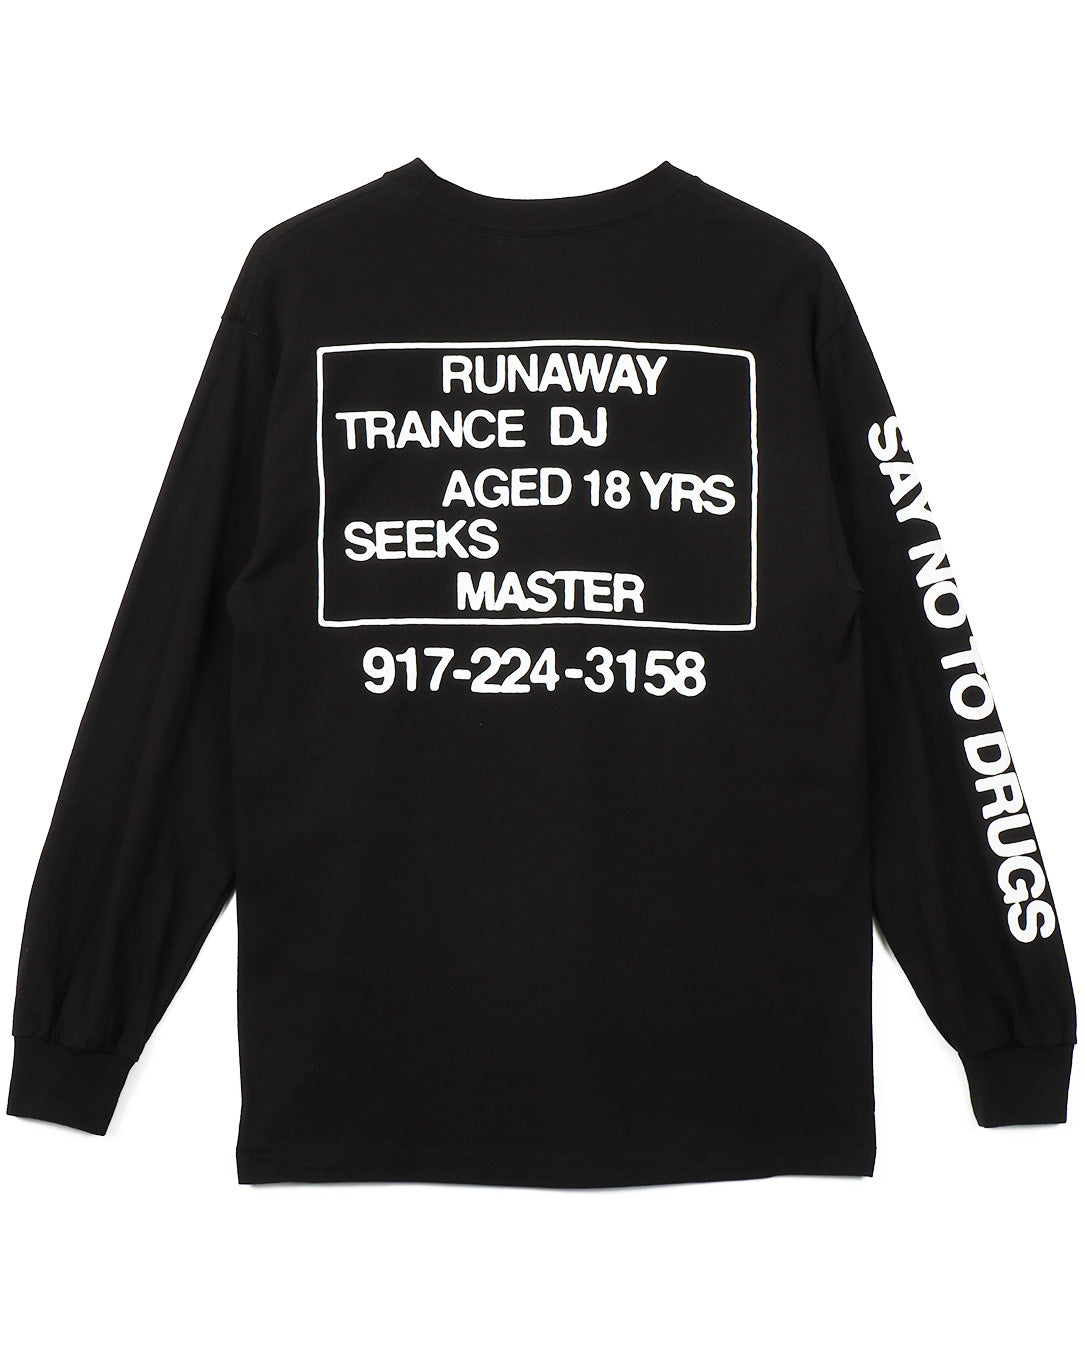 Trance DJ L/S T-Shirt